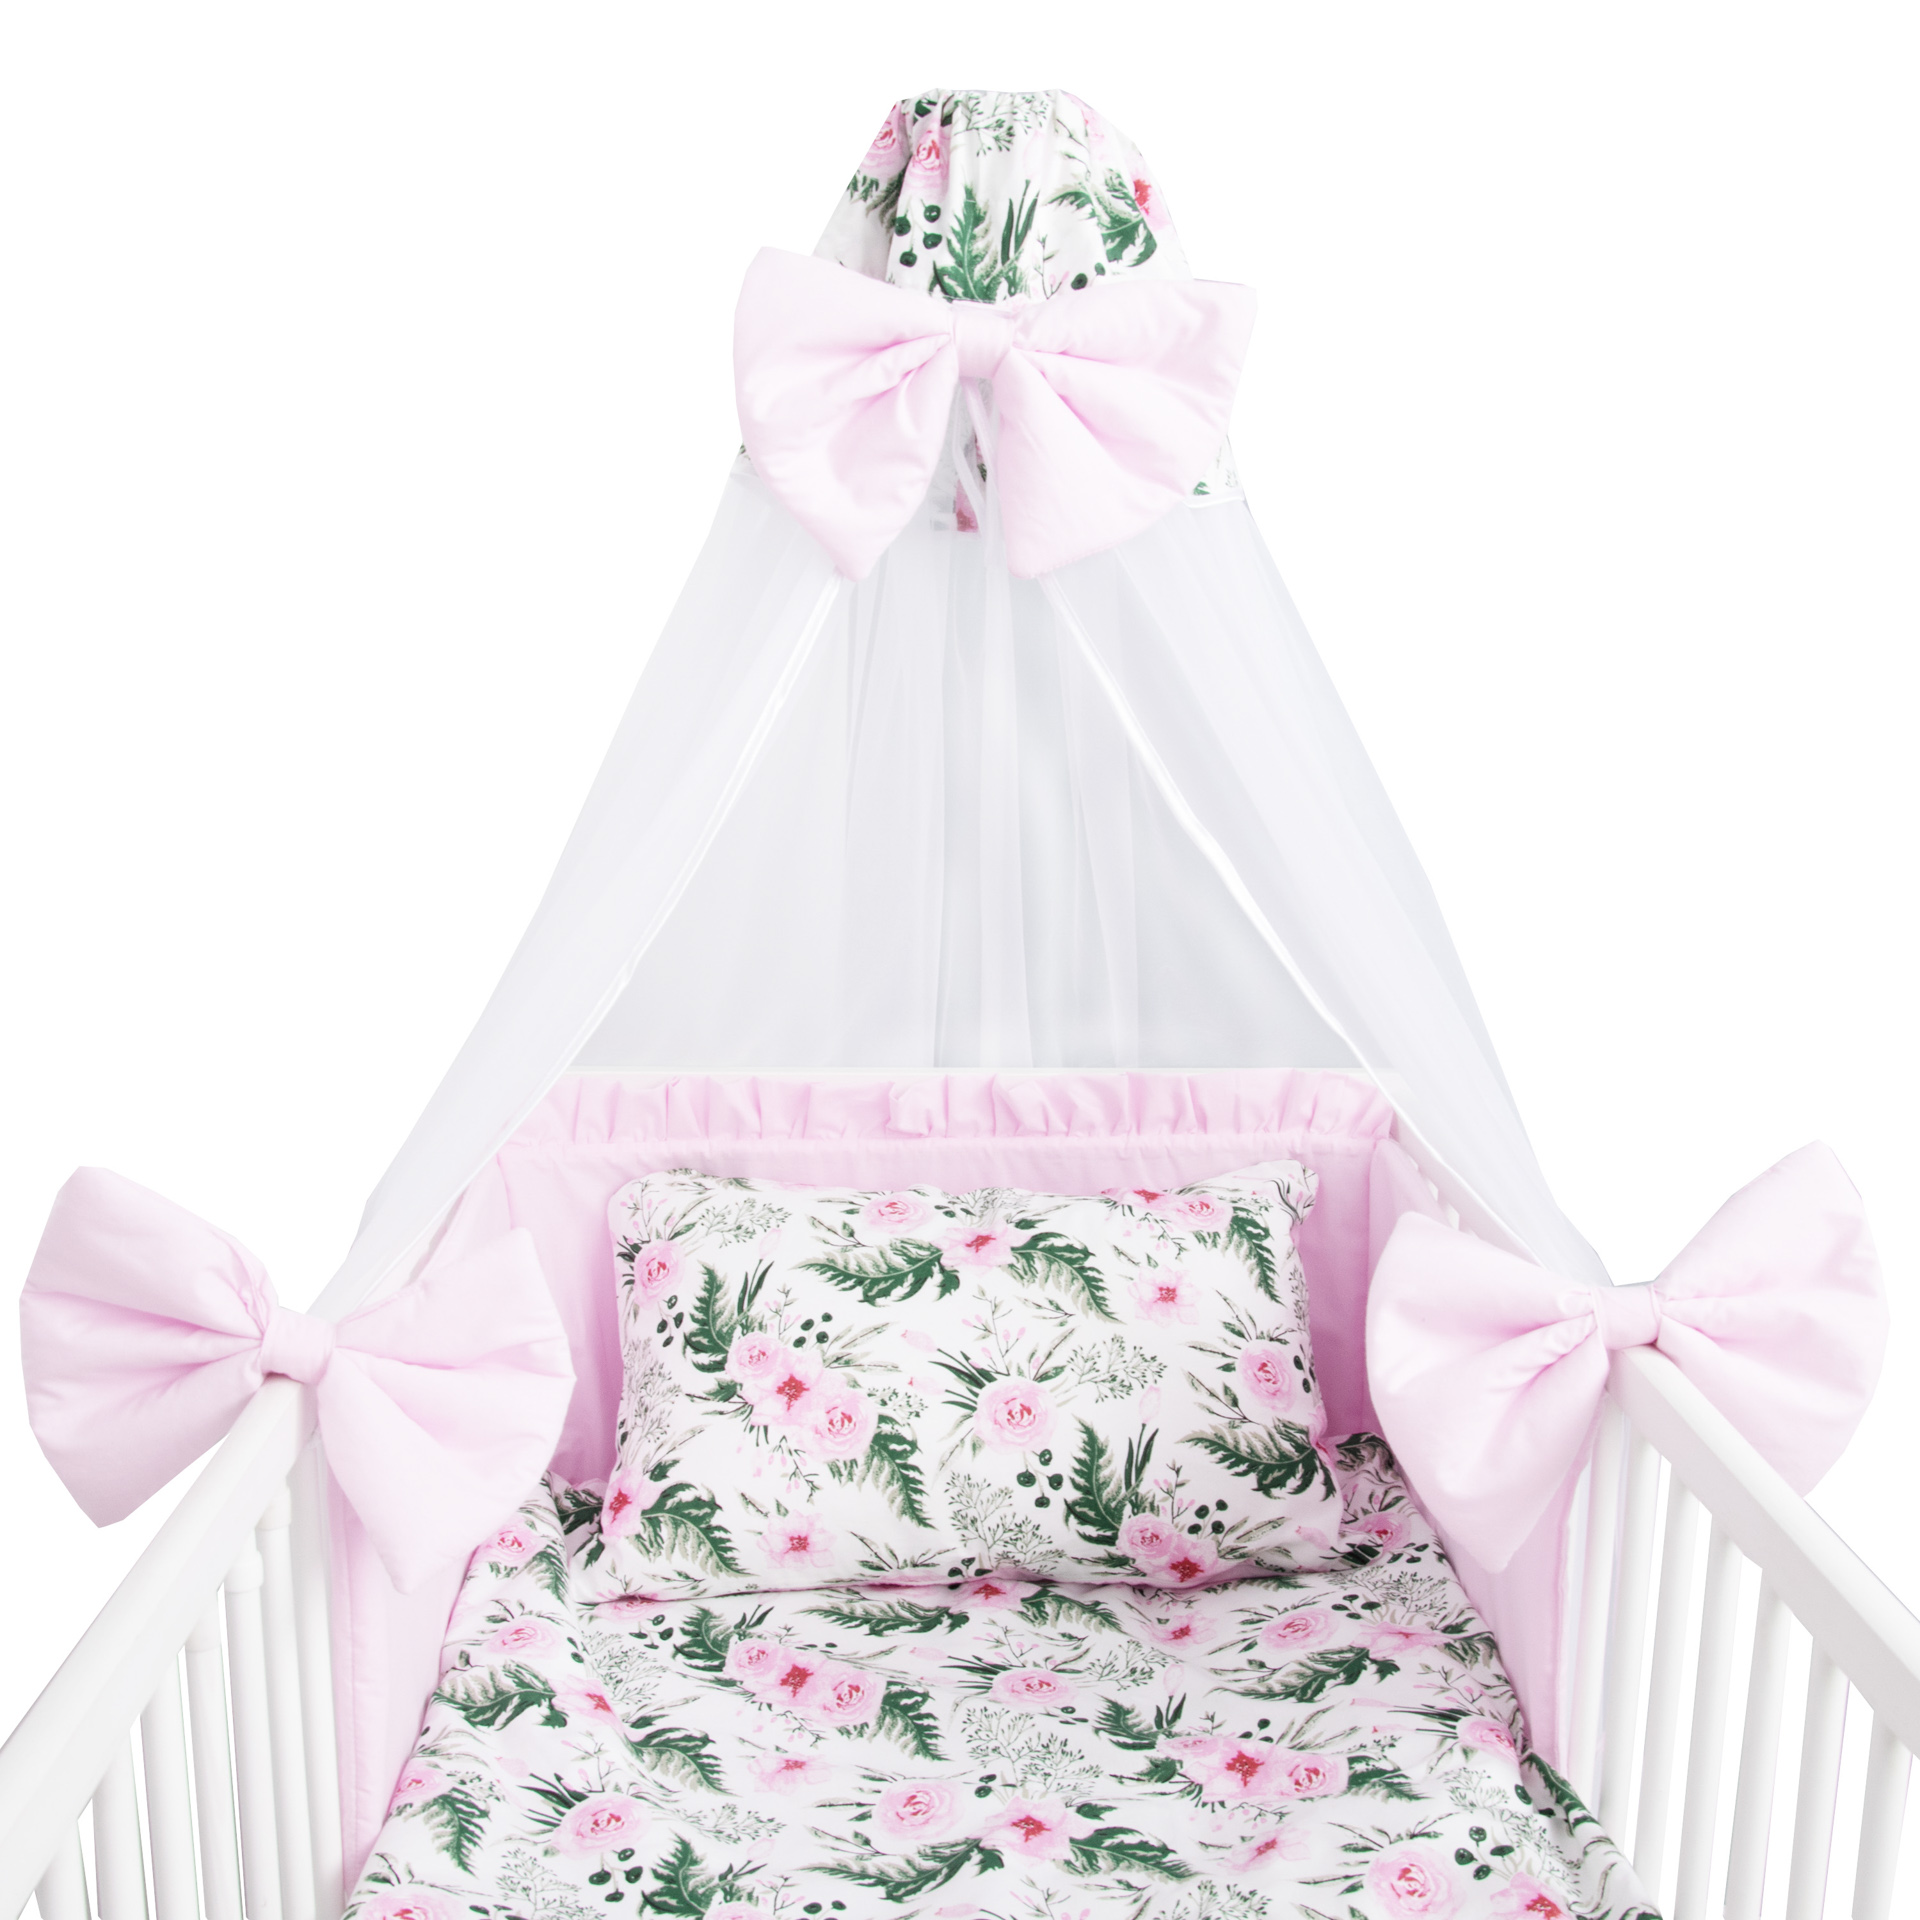 Baby Bettwäsche Bettset mit Nestchen Kinderbettwäsche Himmel 100x135cm NEU 